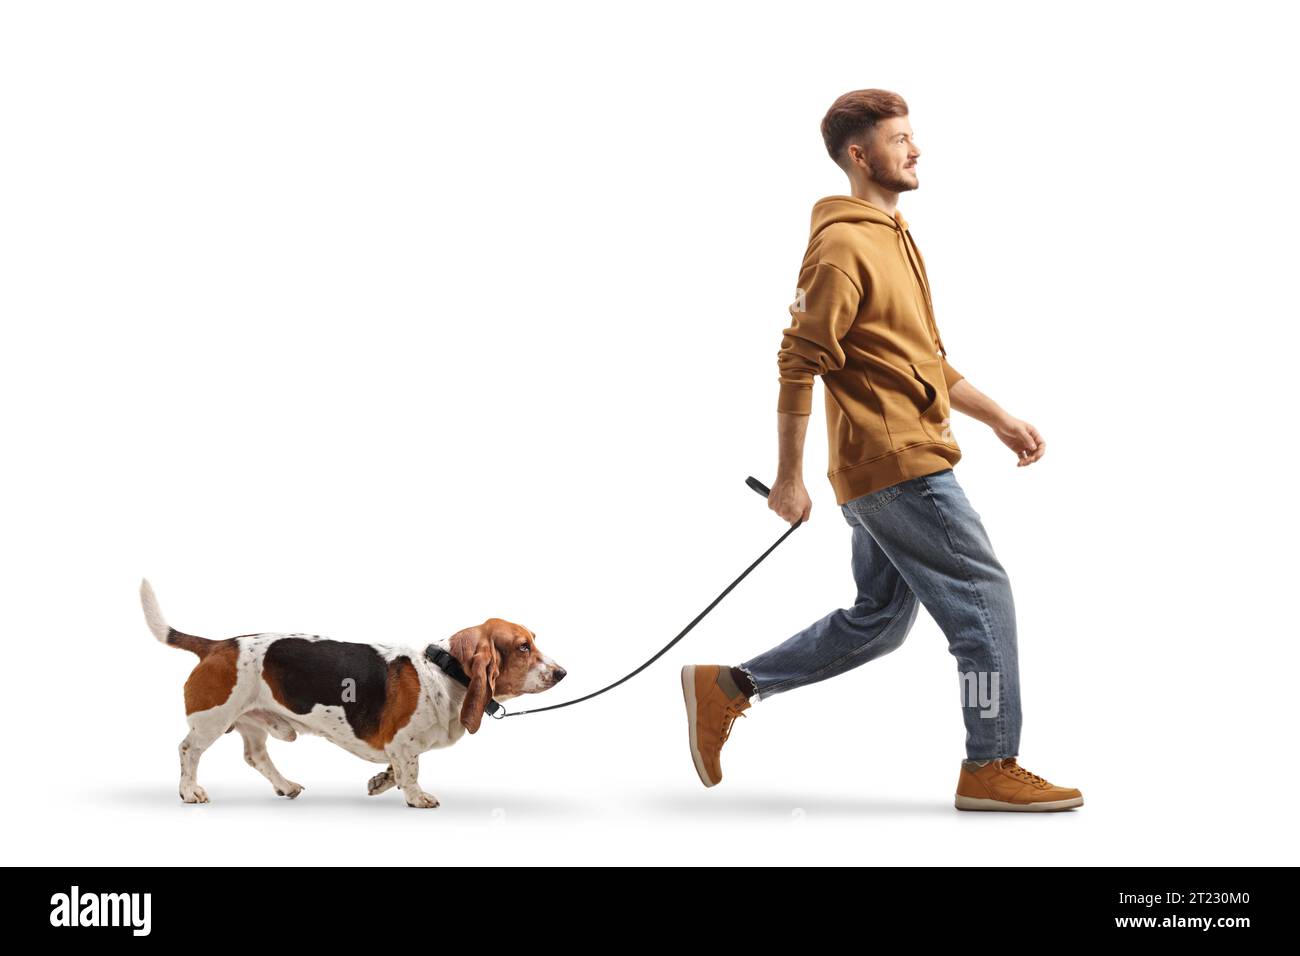 Plan en longueur d'un gars marchant un chien basset sur une laisse isolée sur fond blanc Banque D'Images